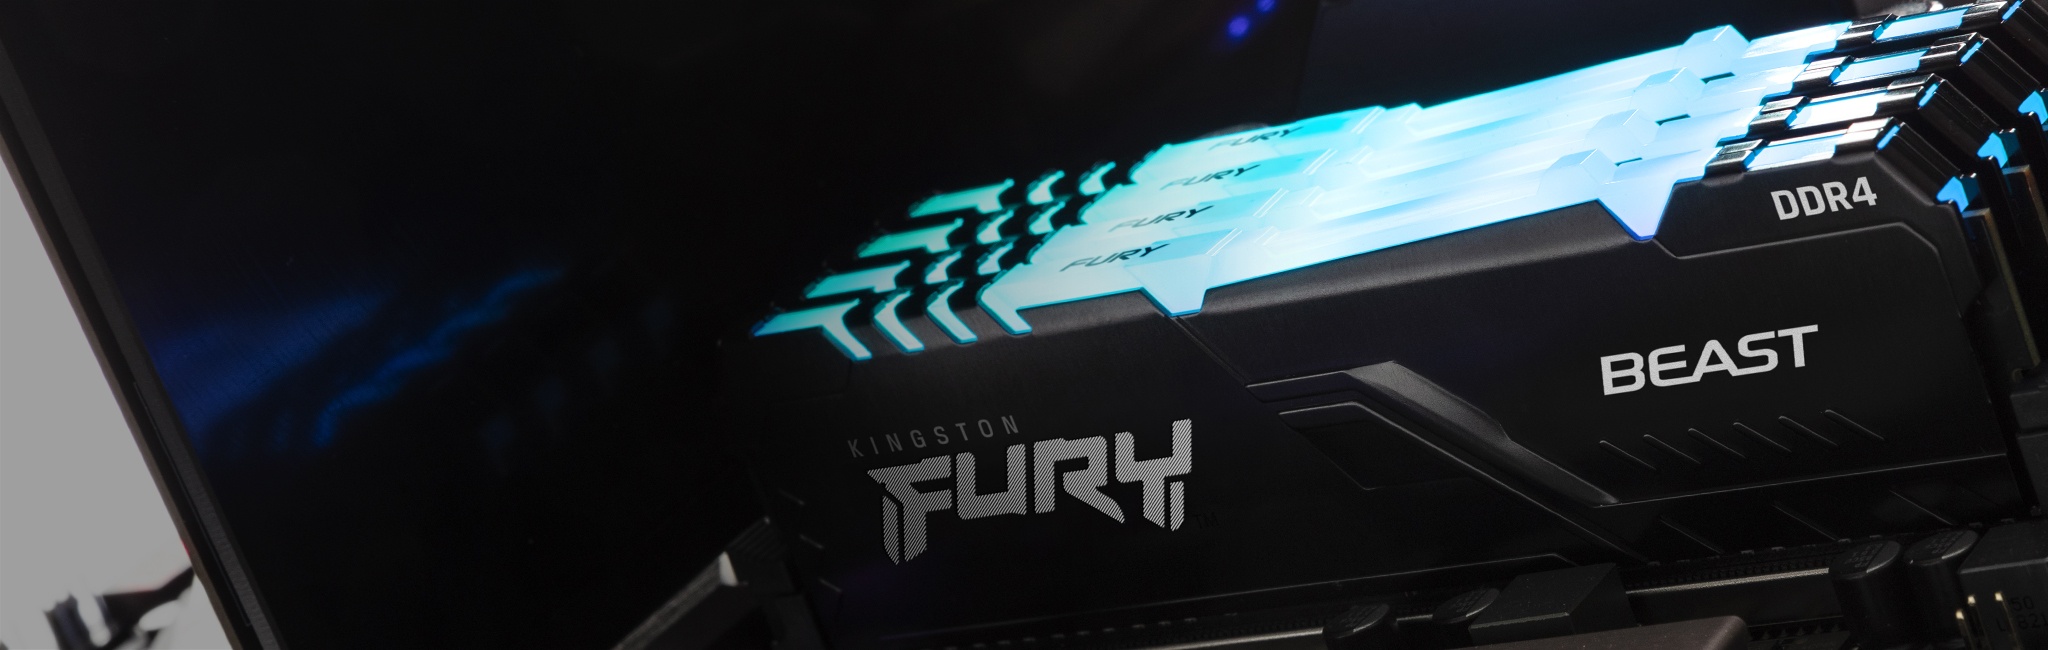 Kingston FURY Beast RGB instalada en un PC con brillo azul desde la parte superior del módulo